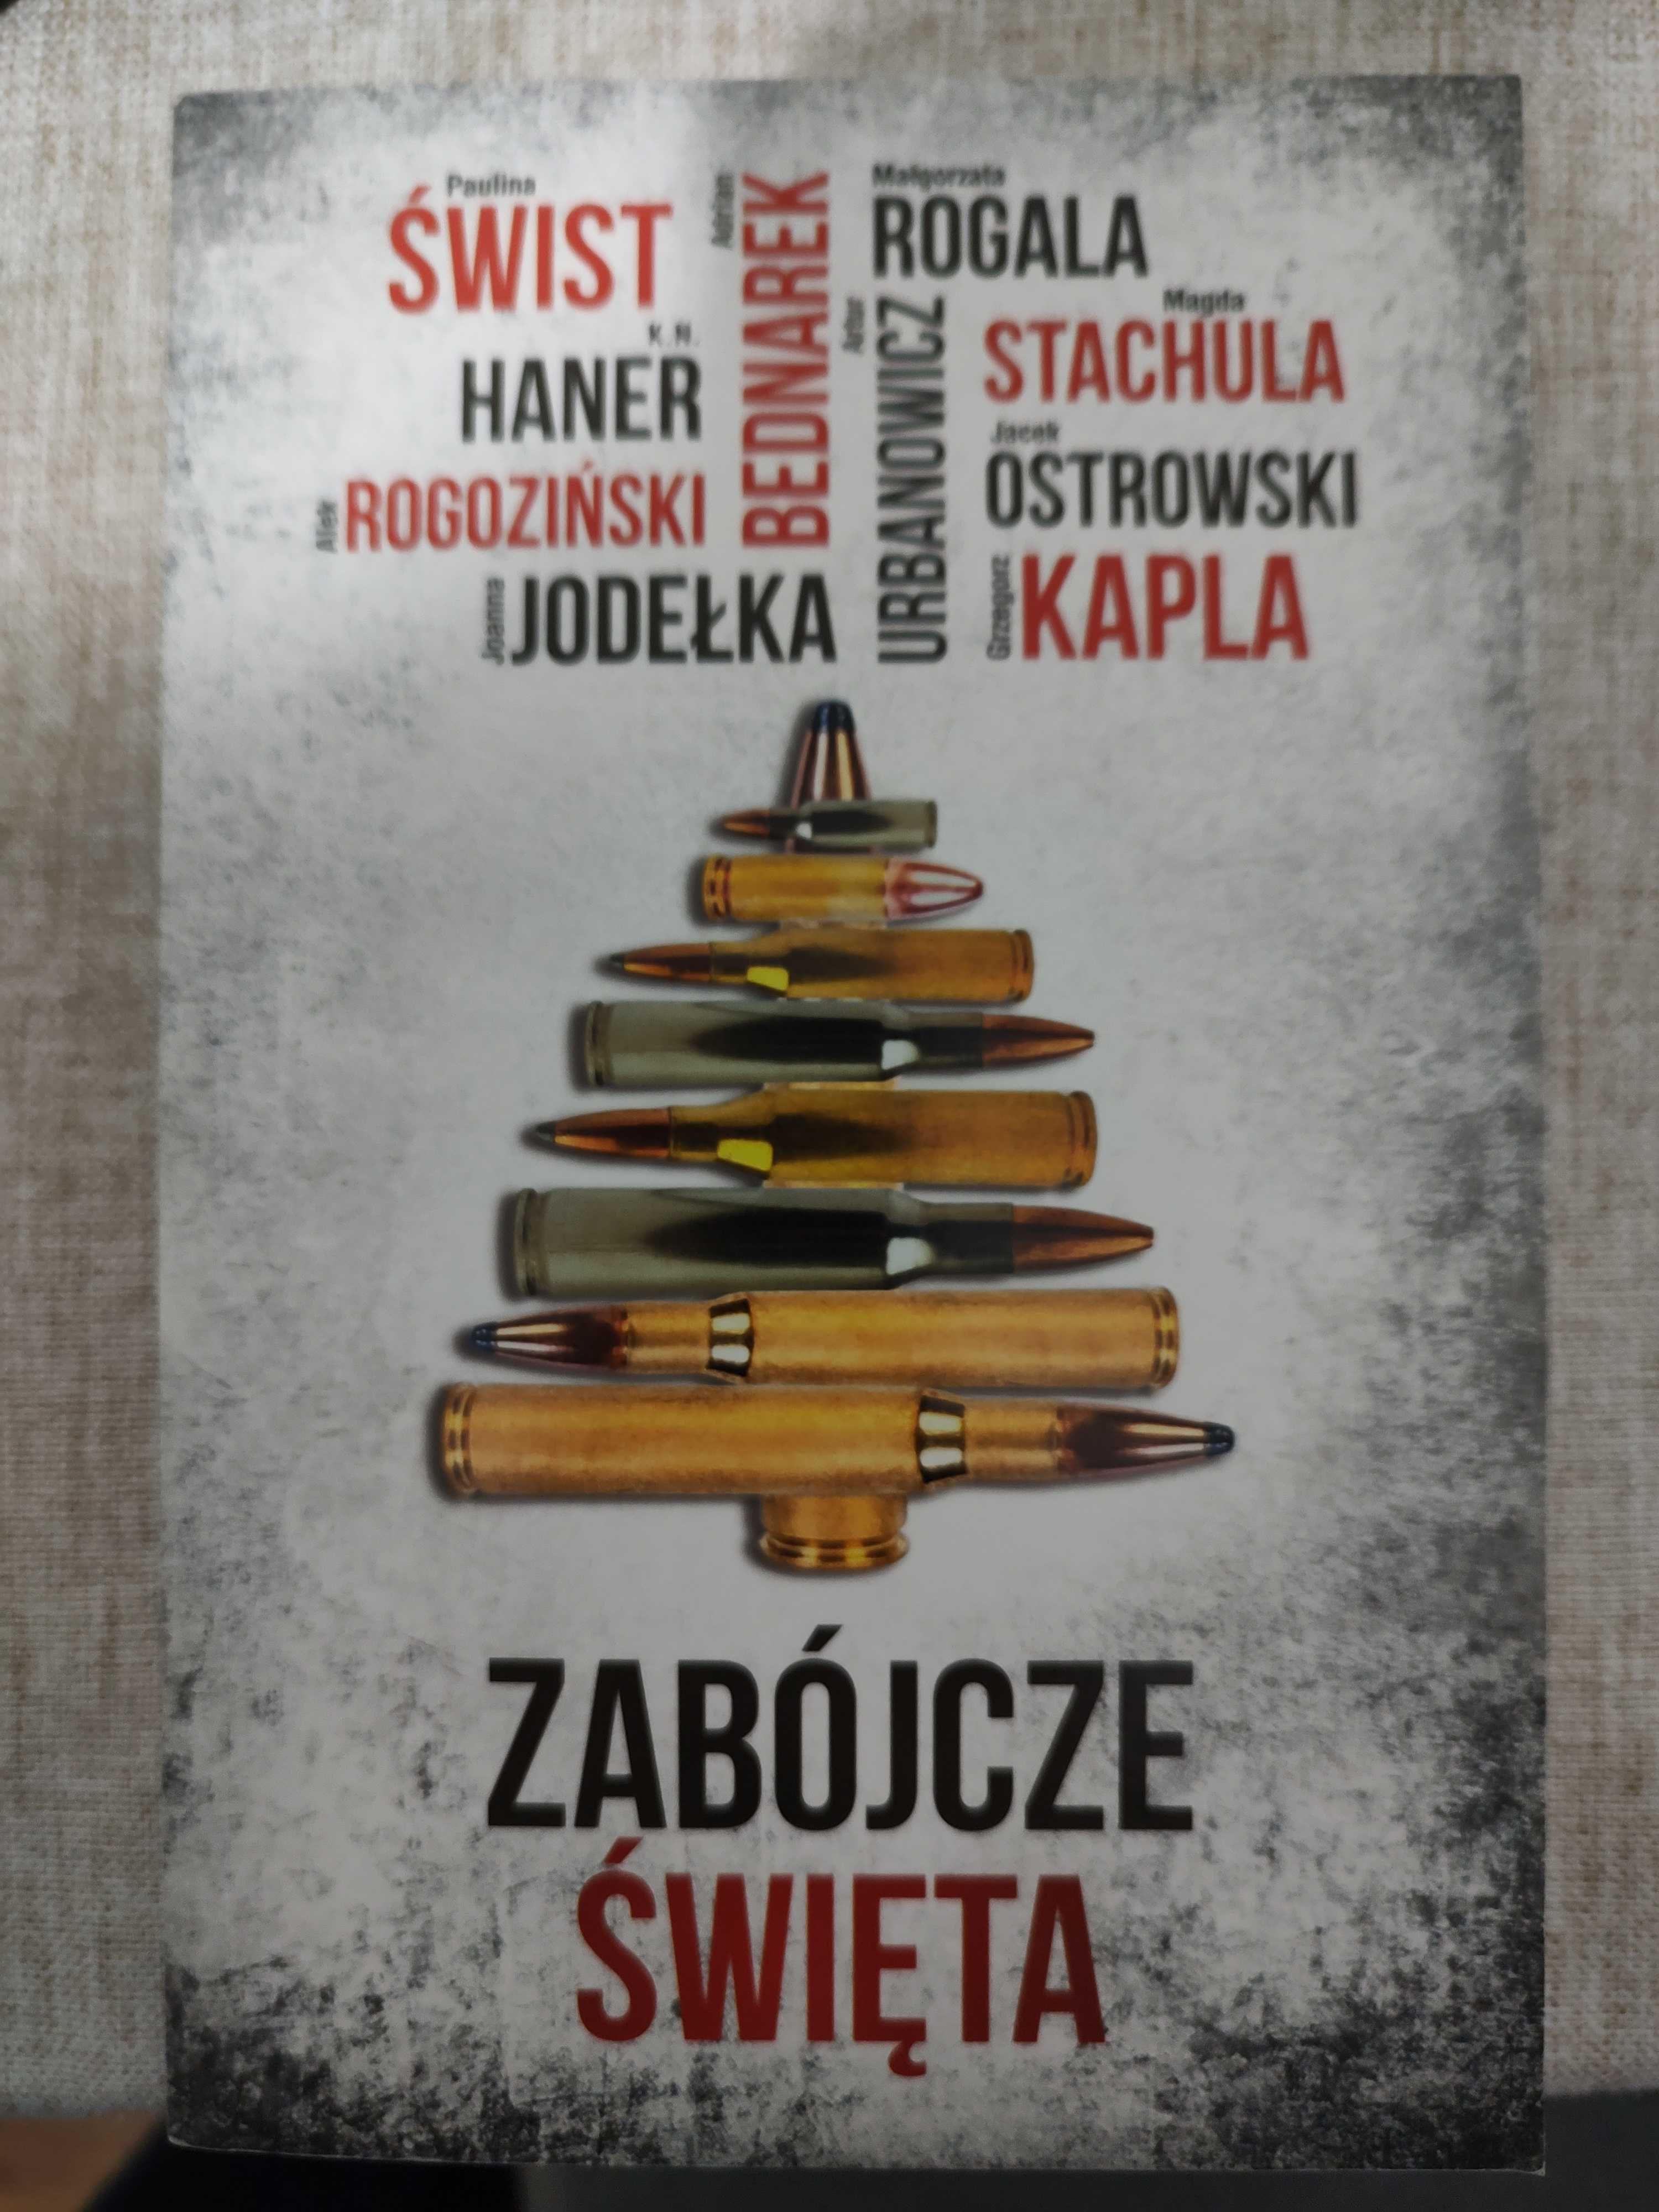 Zabójcze święta - cykl polskich autorów kryminałów